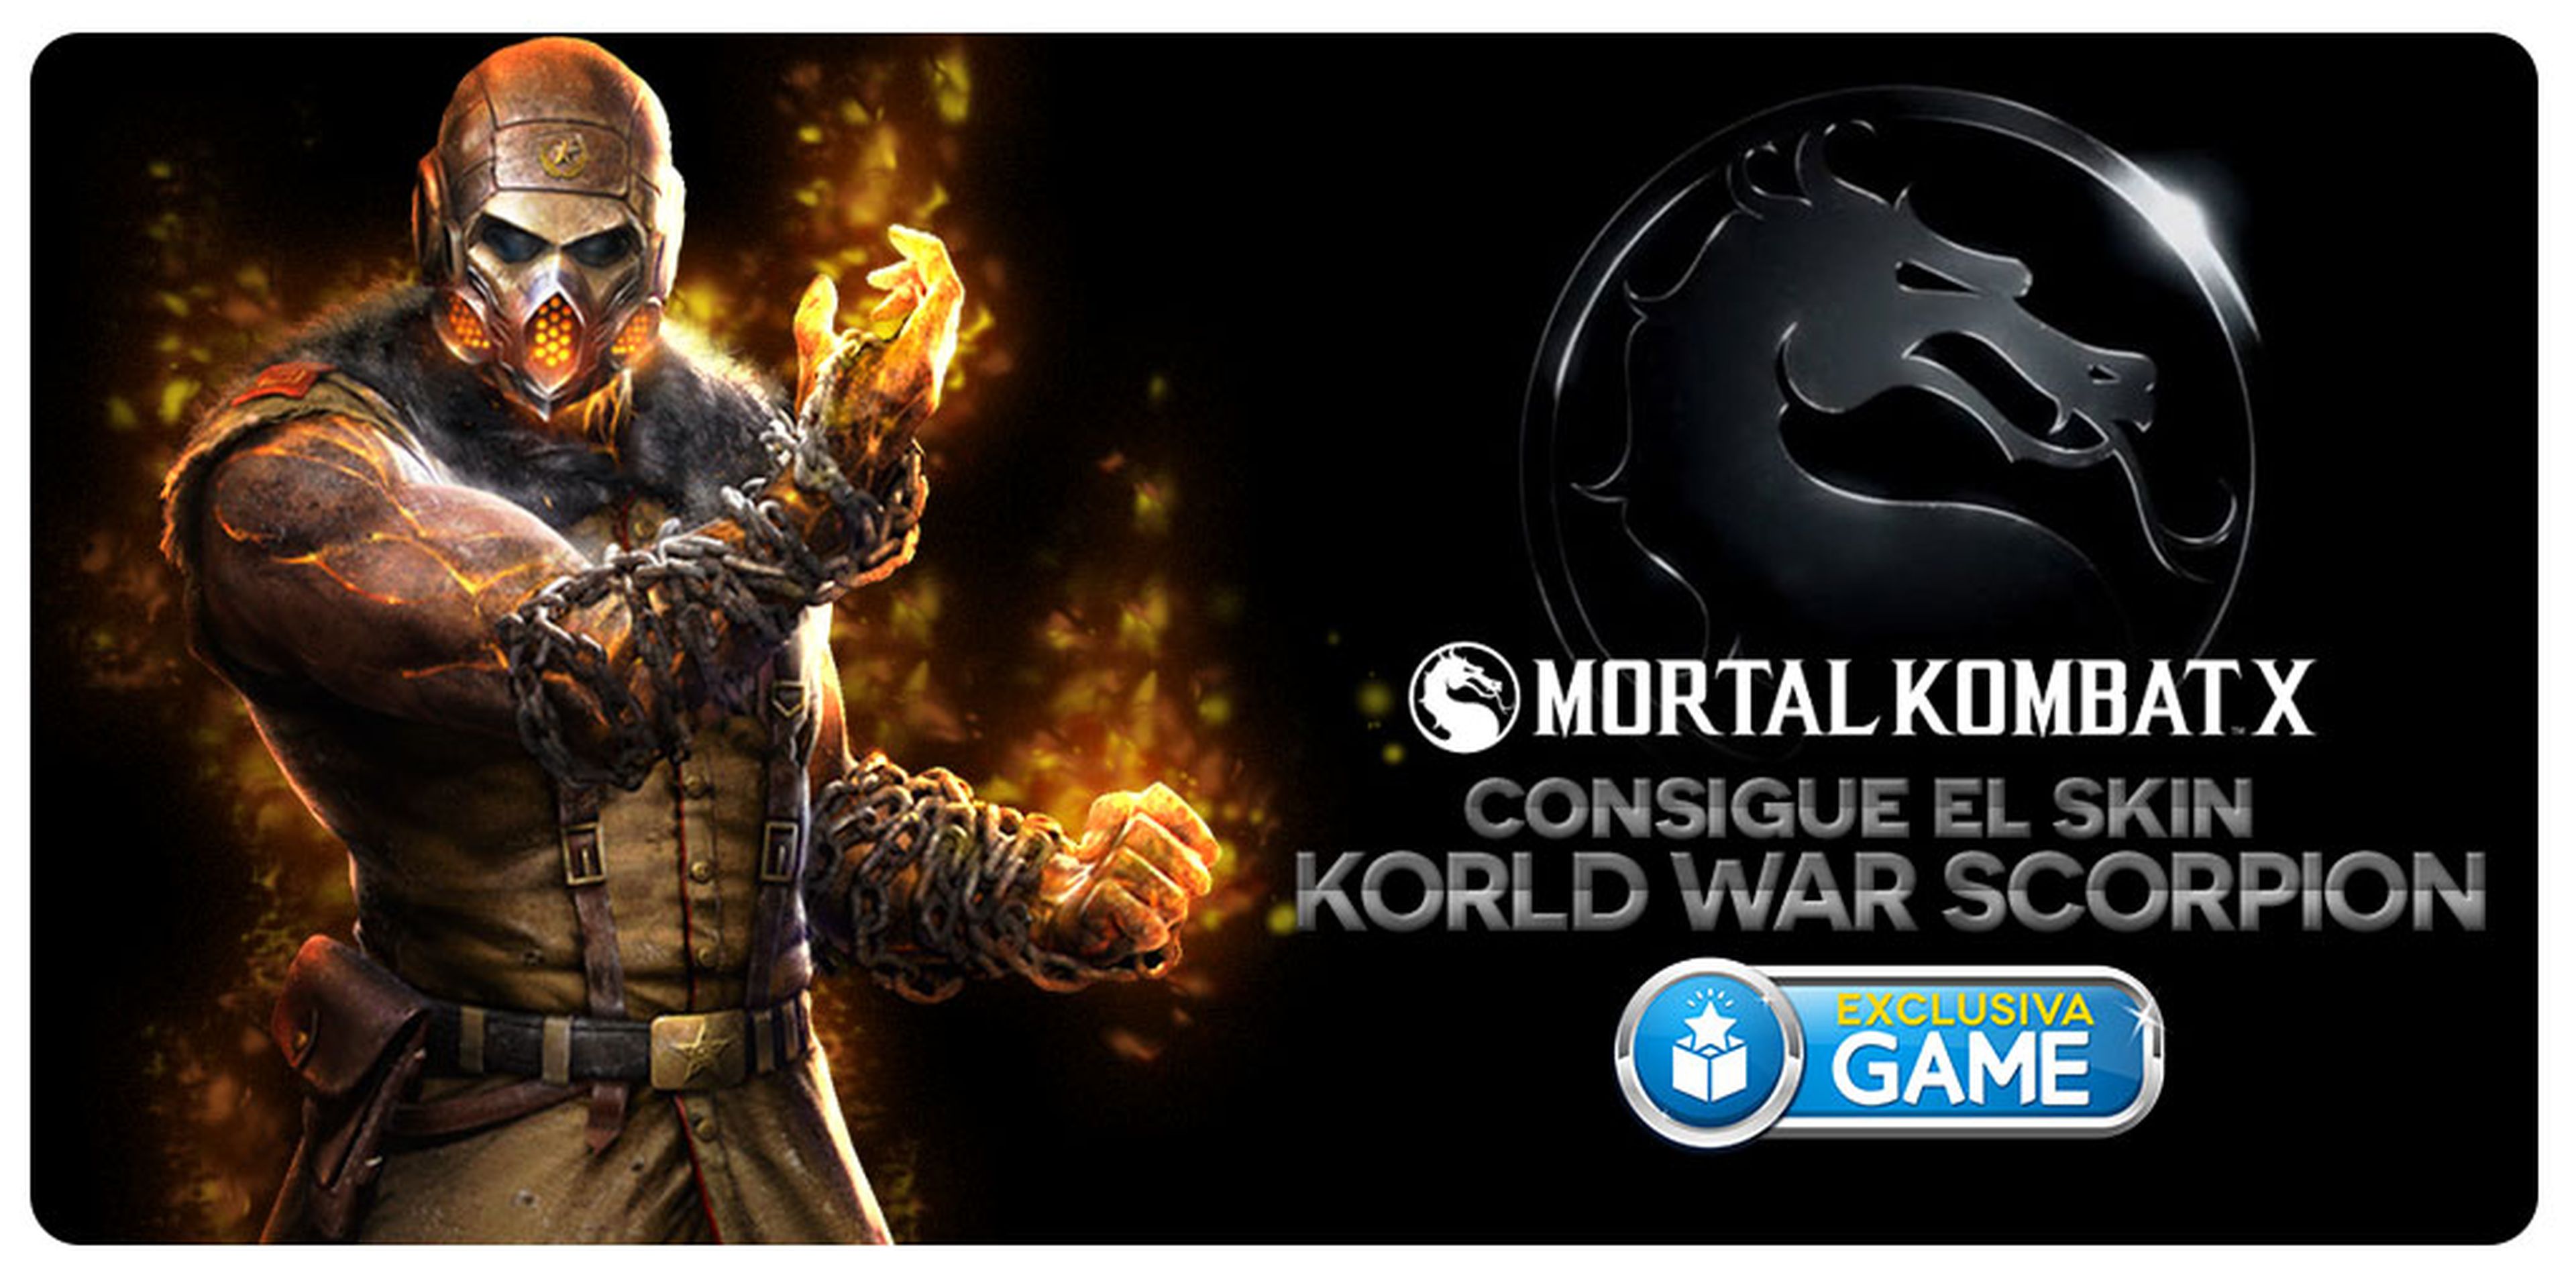 Mortal Kombat X, regalo exclusivo por su reserva en GAME